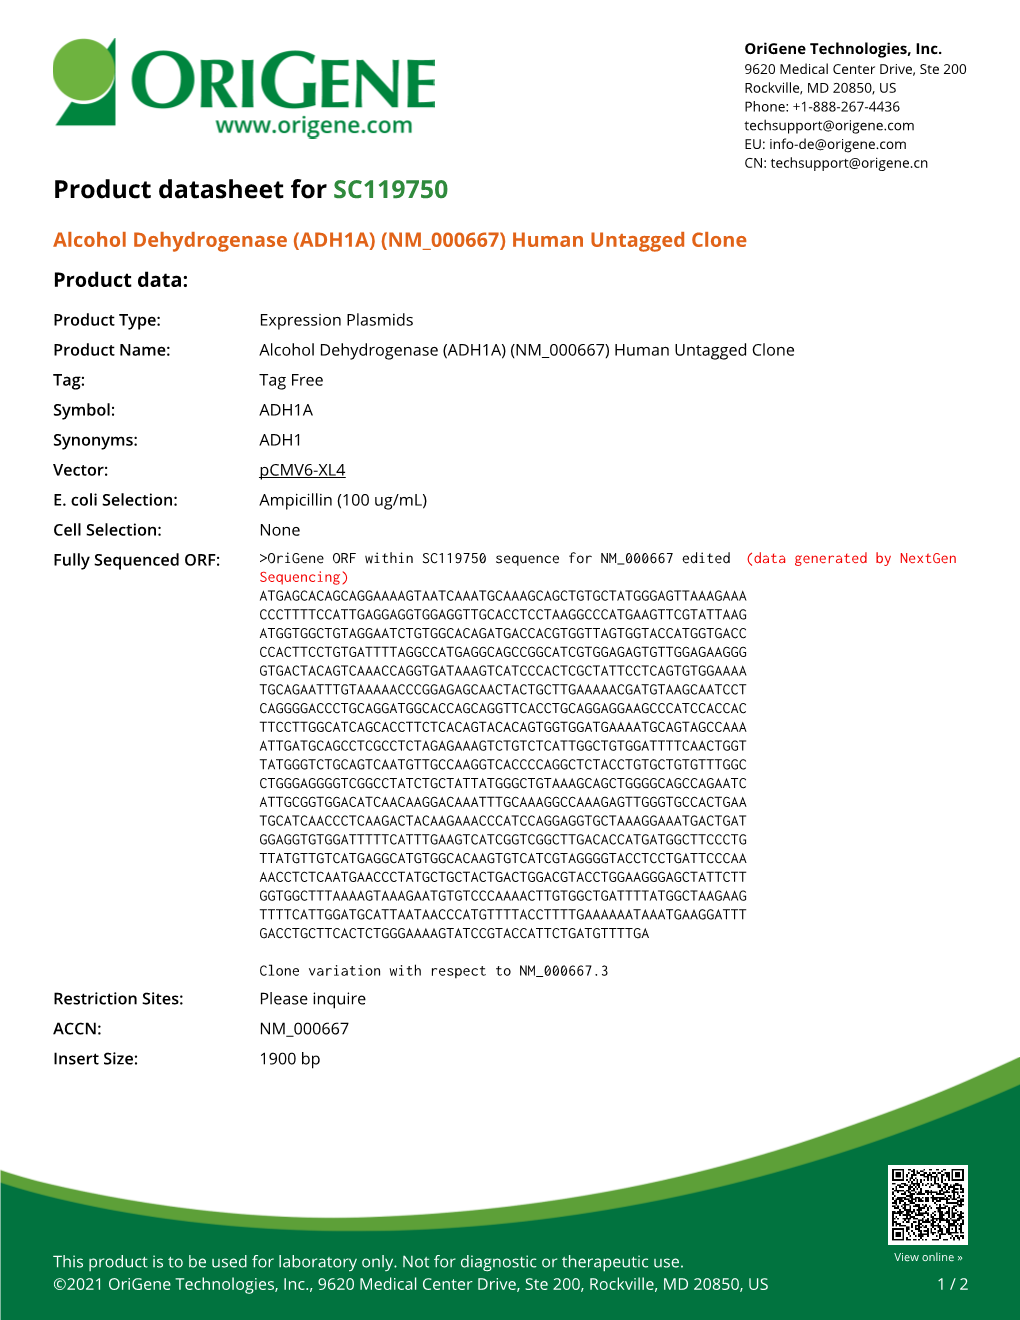 Alcohol Dehydrogenase (ADH1A) (NM 000667) Human Untagged Clone – SC119750 | Origene